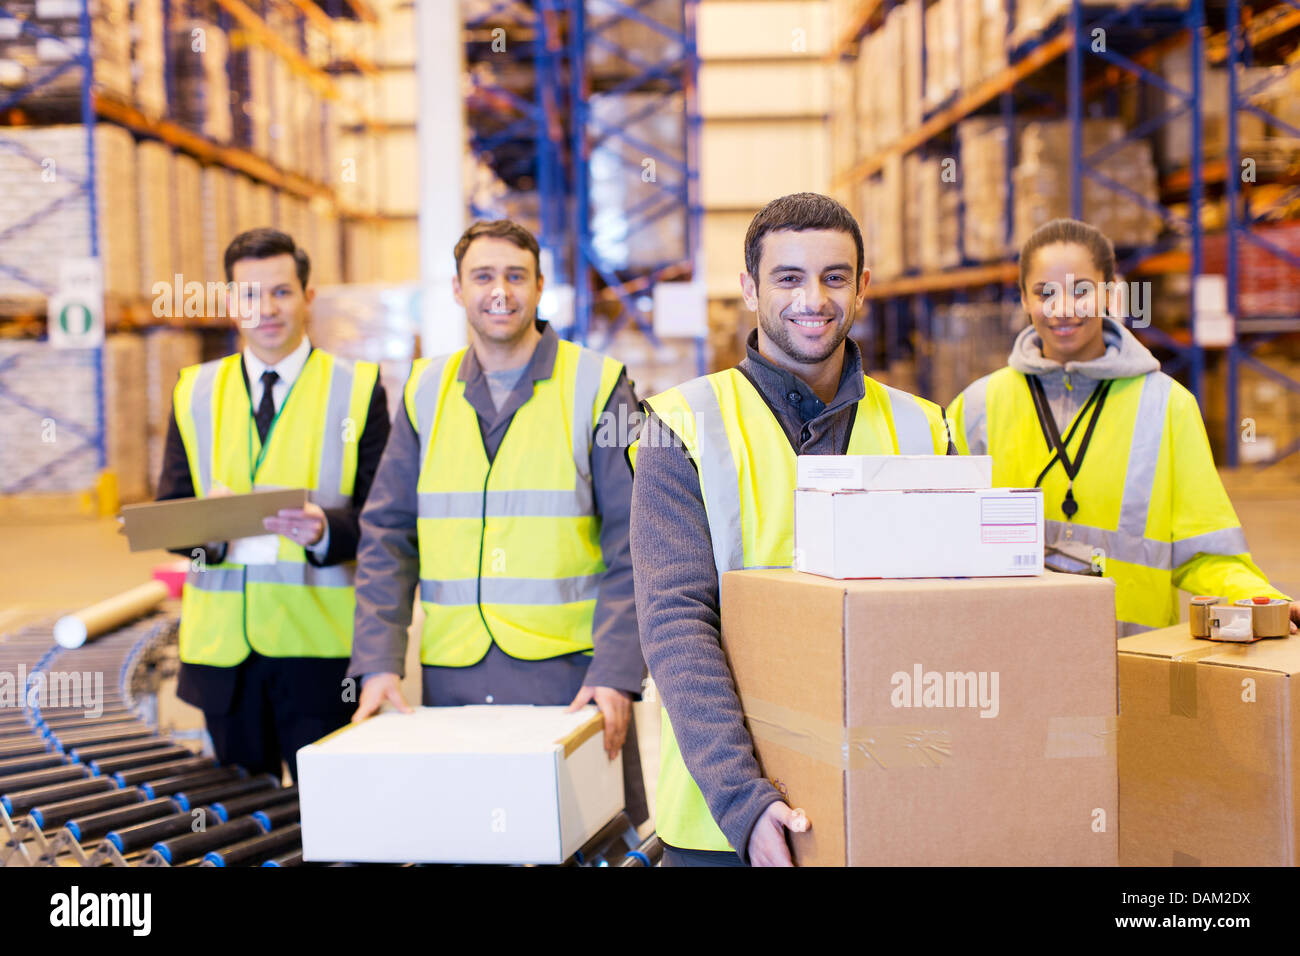 Los trabajadores sonriendo por banda transportadora en el almacén Foto de stock